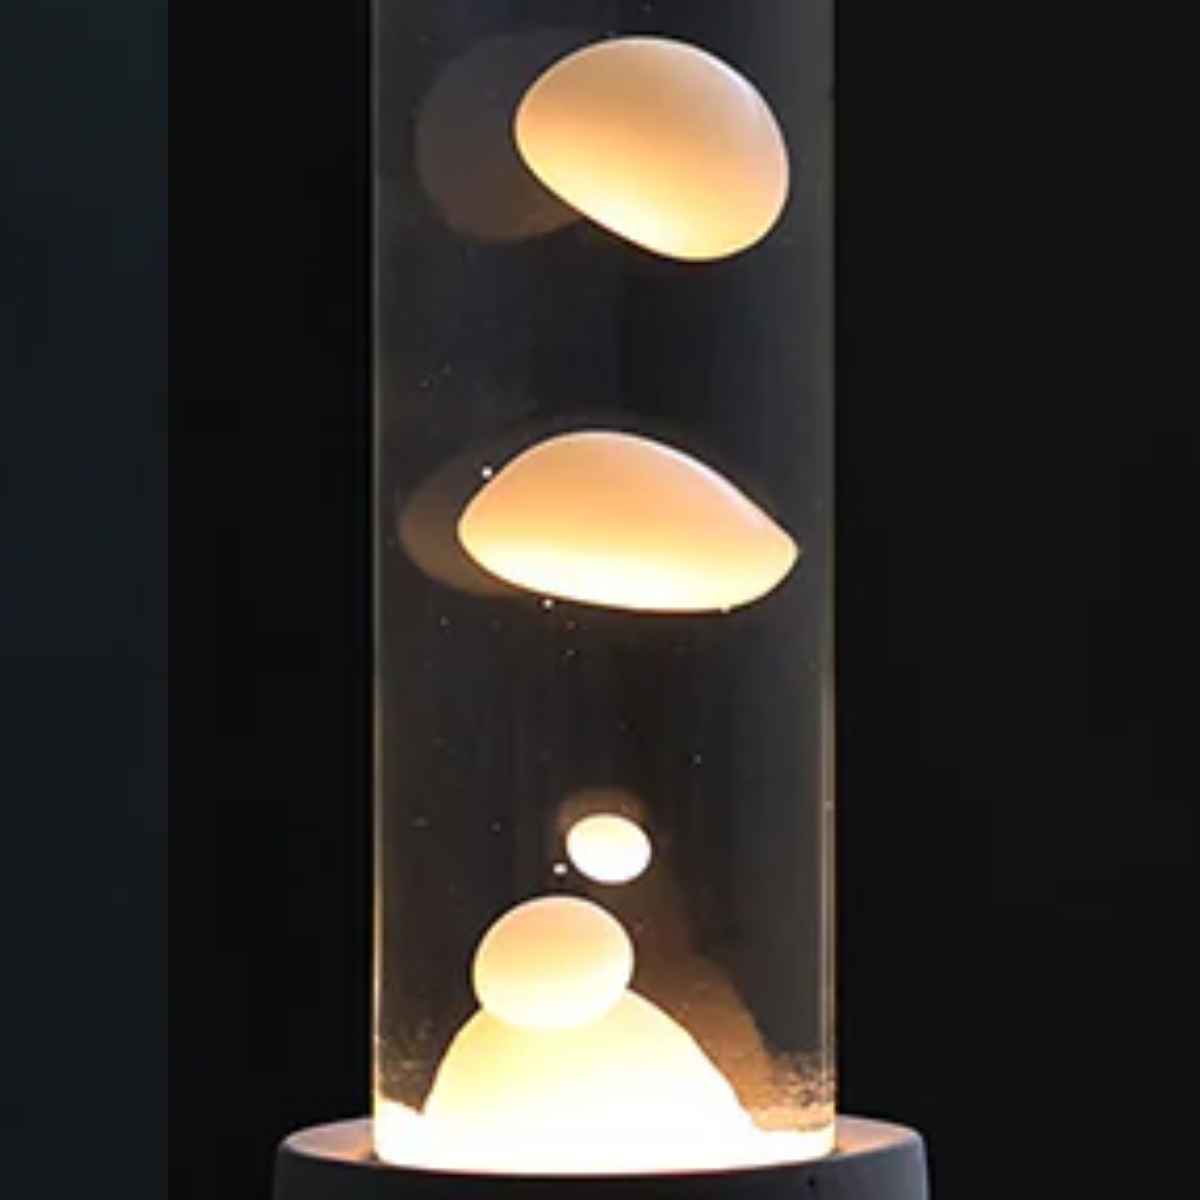 間接照明 ドリッピングランプ ラバライト 幻想的 高さ41cm 